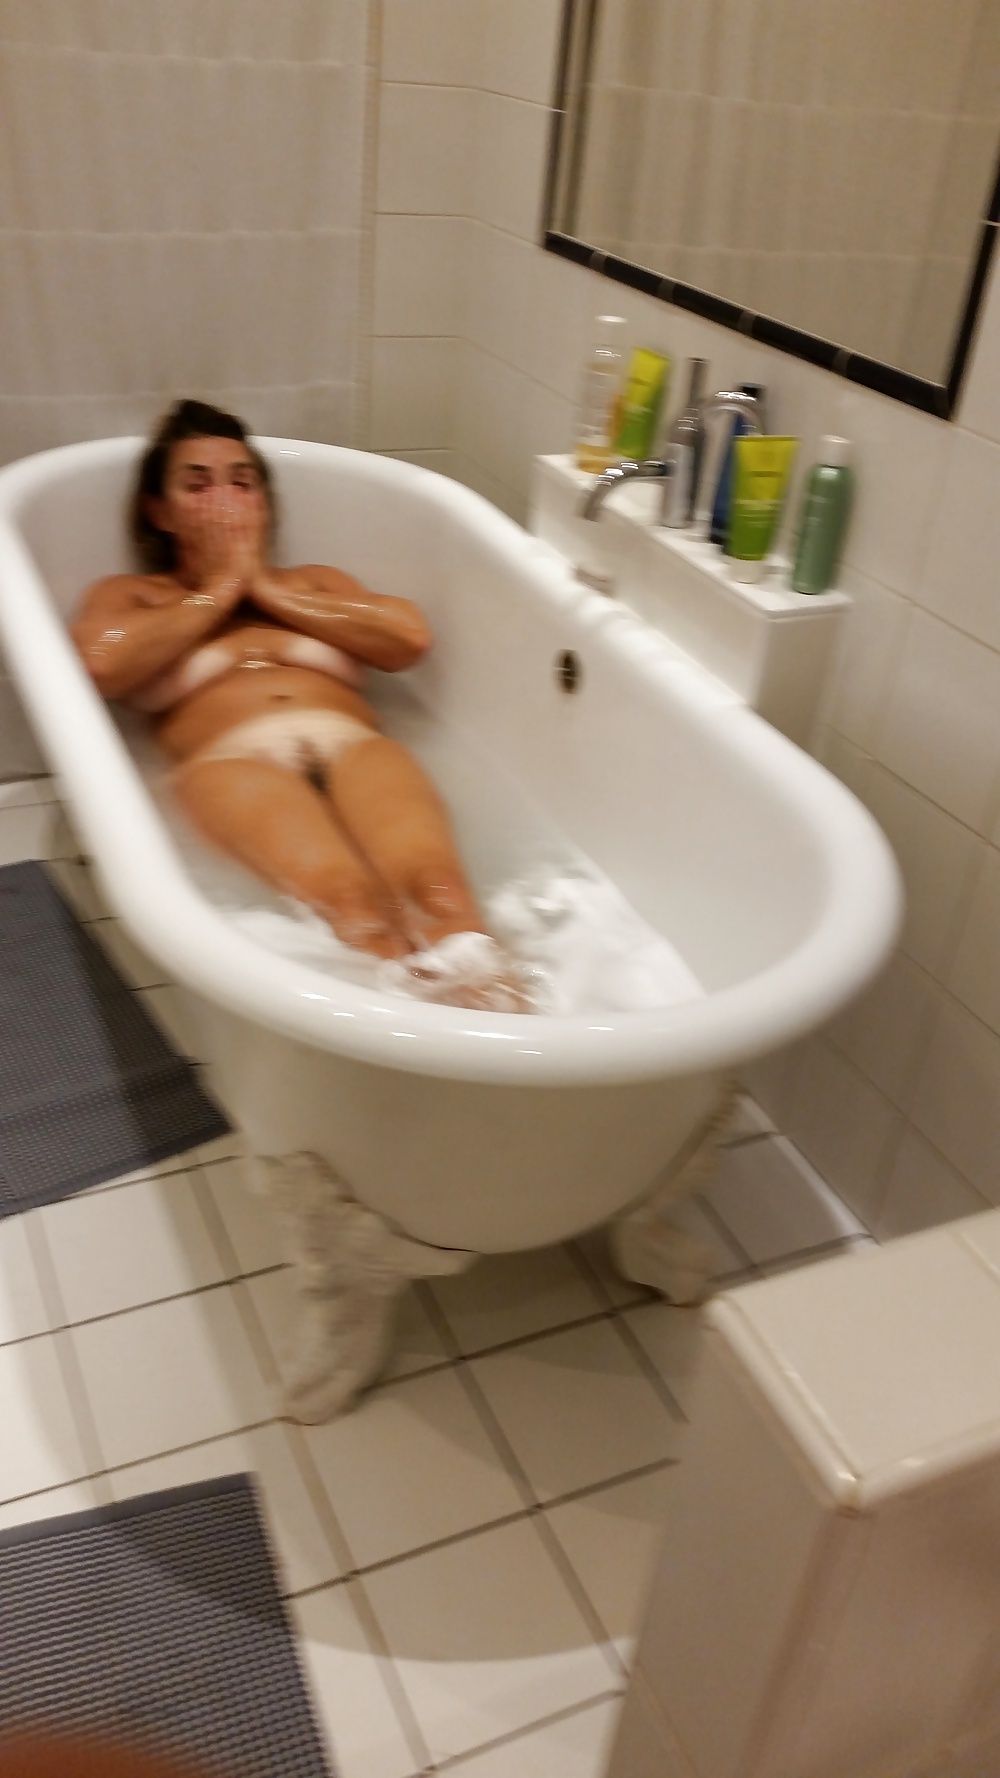 Bath adult photos